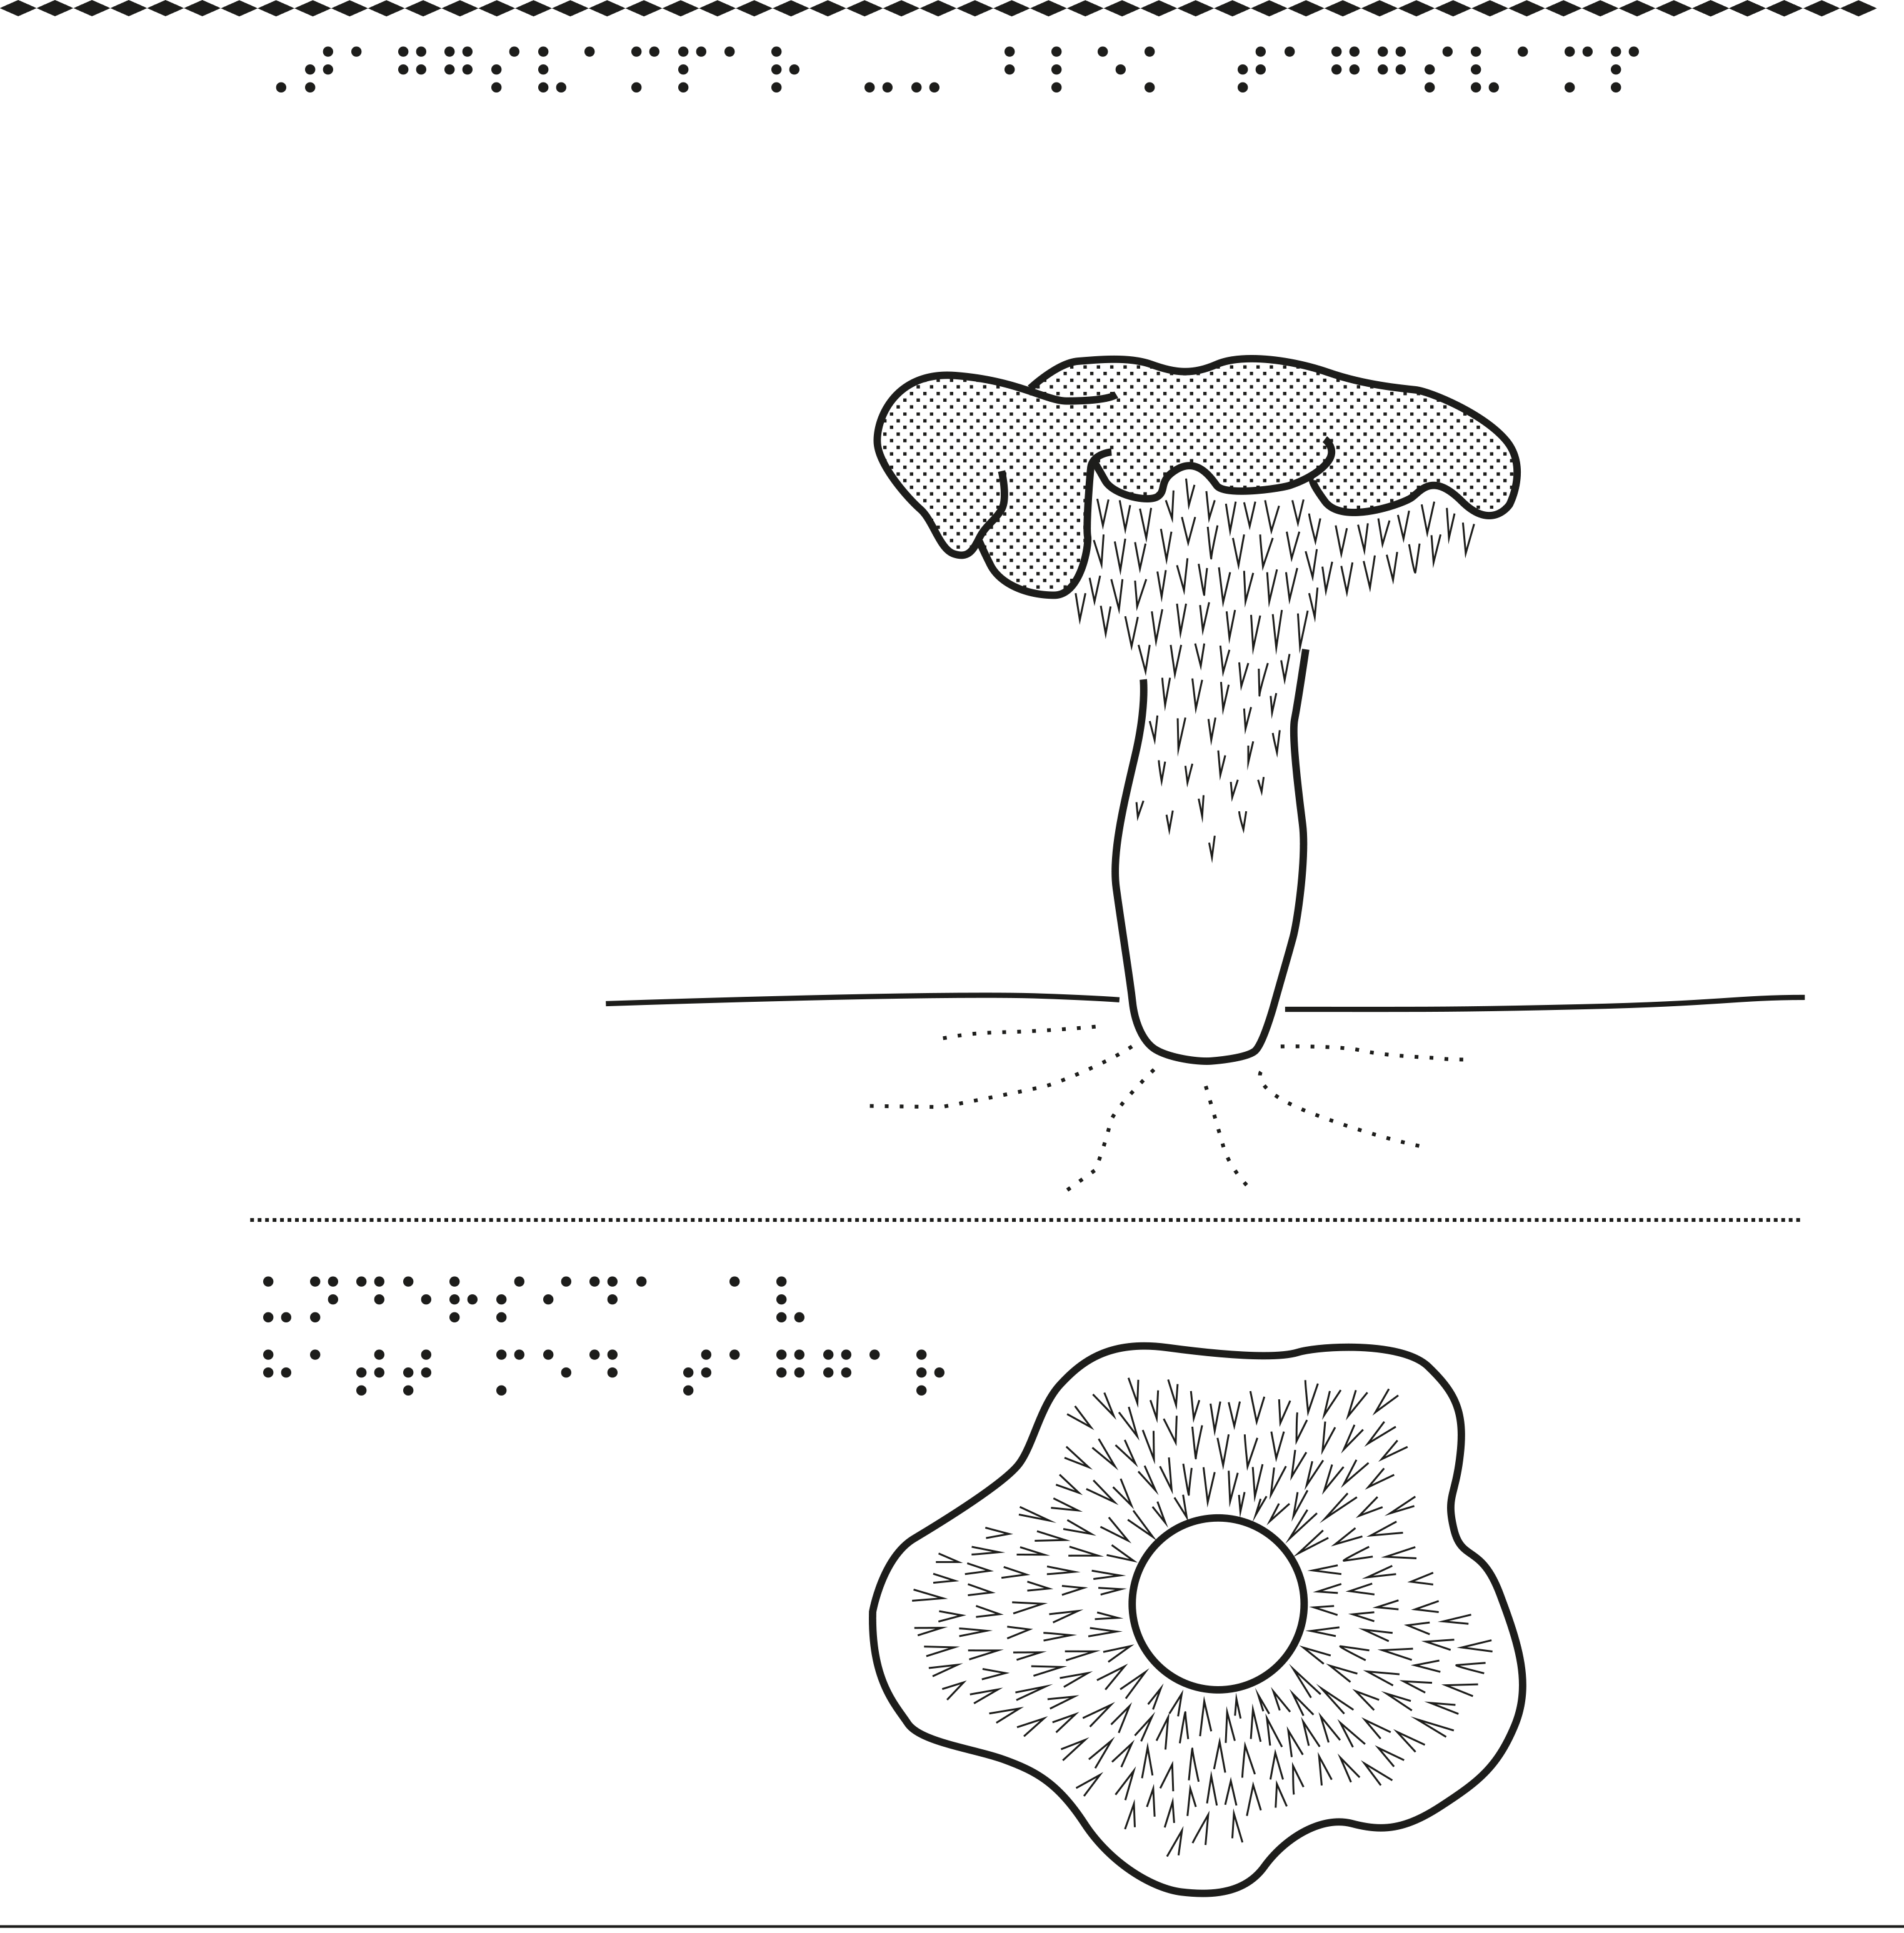 En bild på taggsvampar.